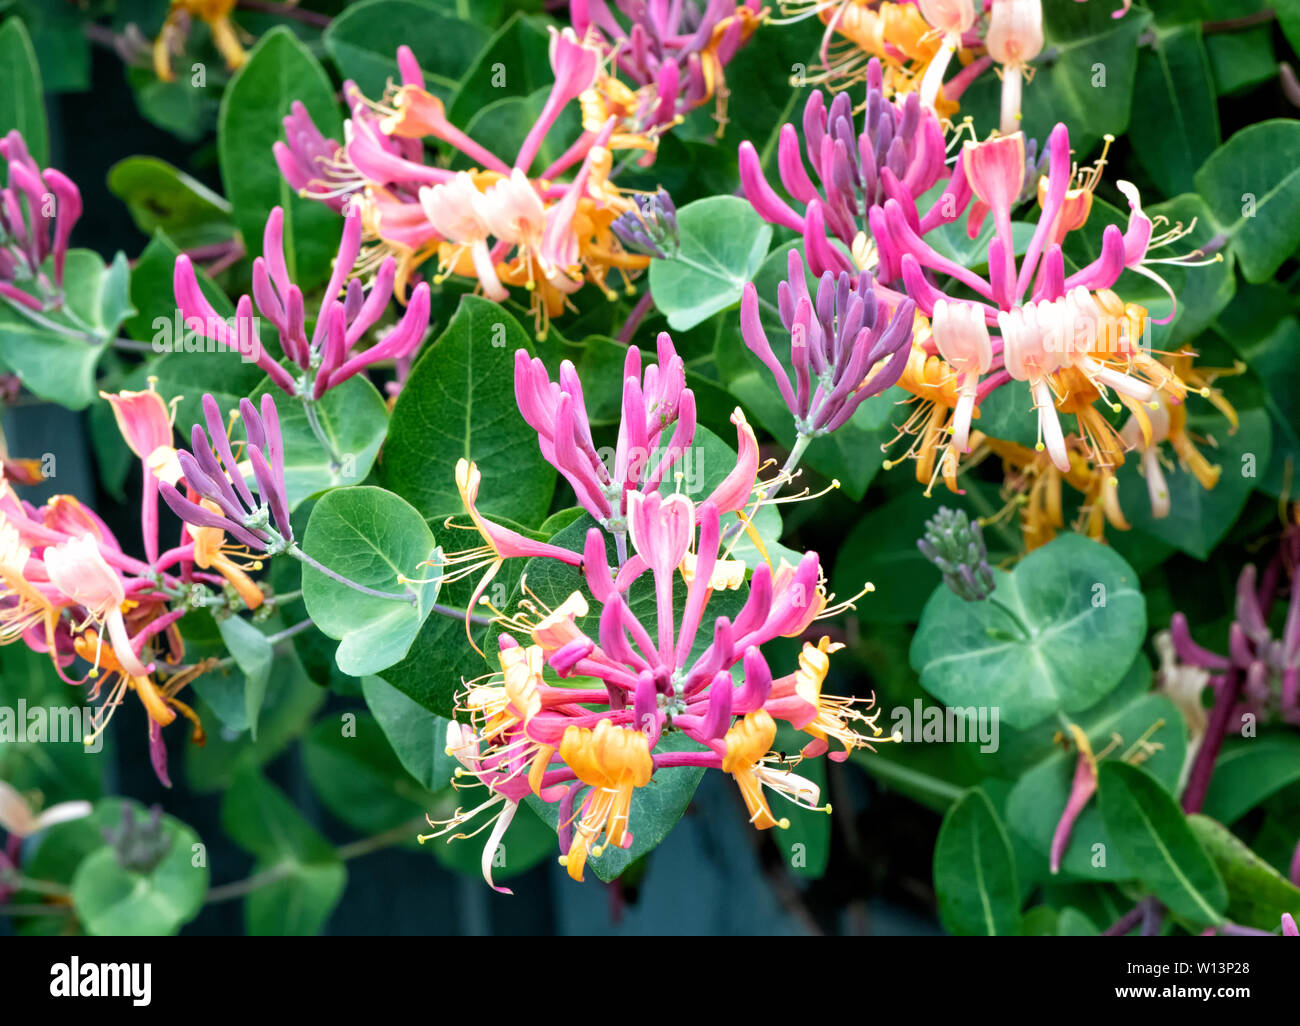 Beautiful mass blooming of Honeysuckle flowers Stock Photo